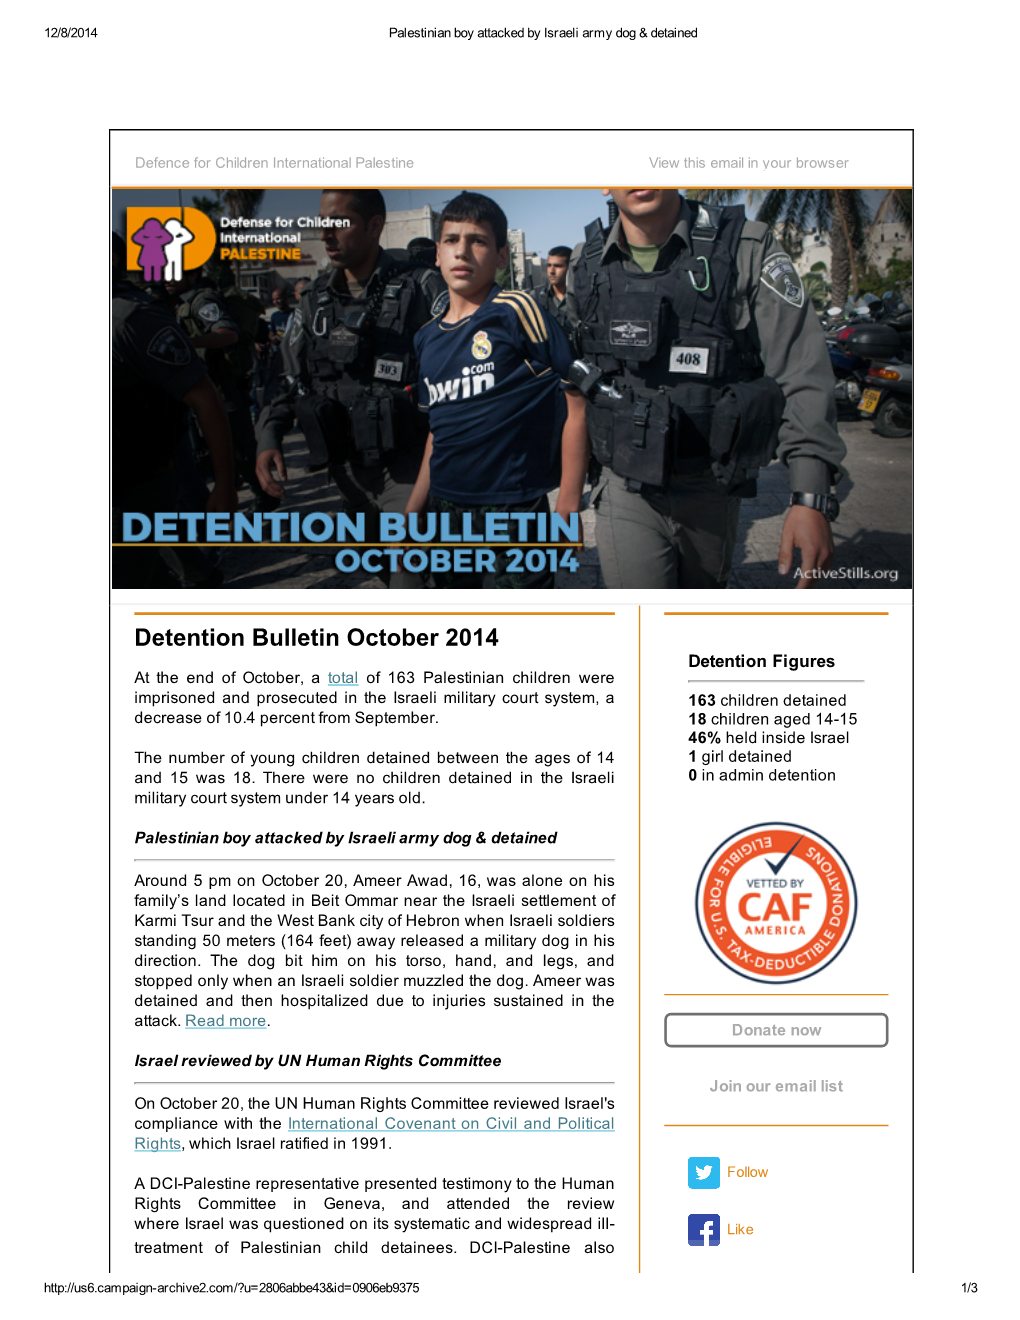 Detention Bulletin October 2014